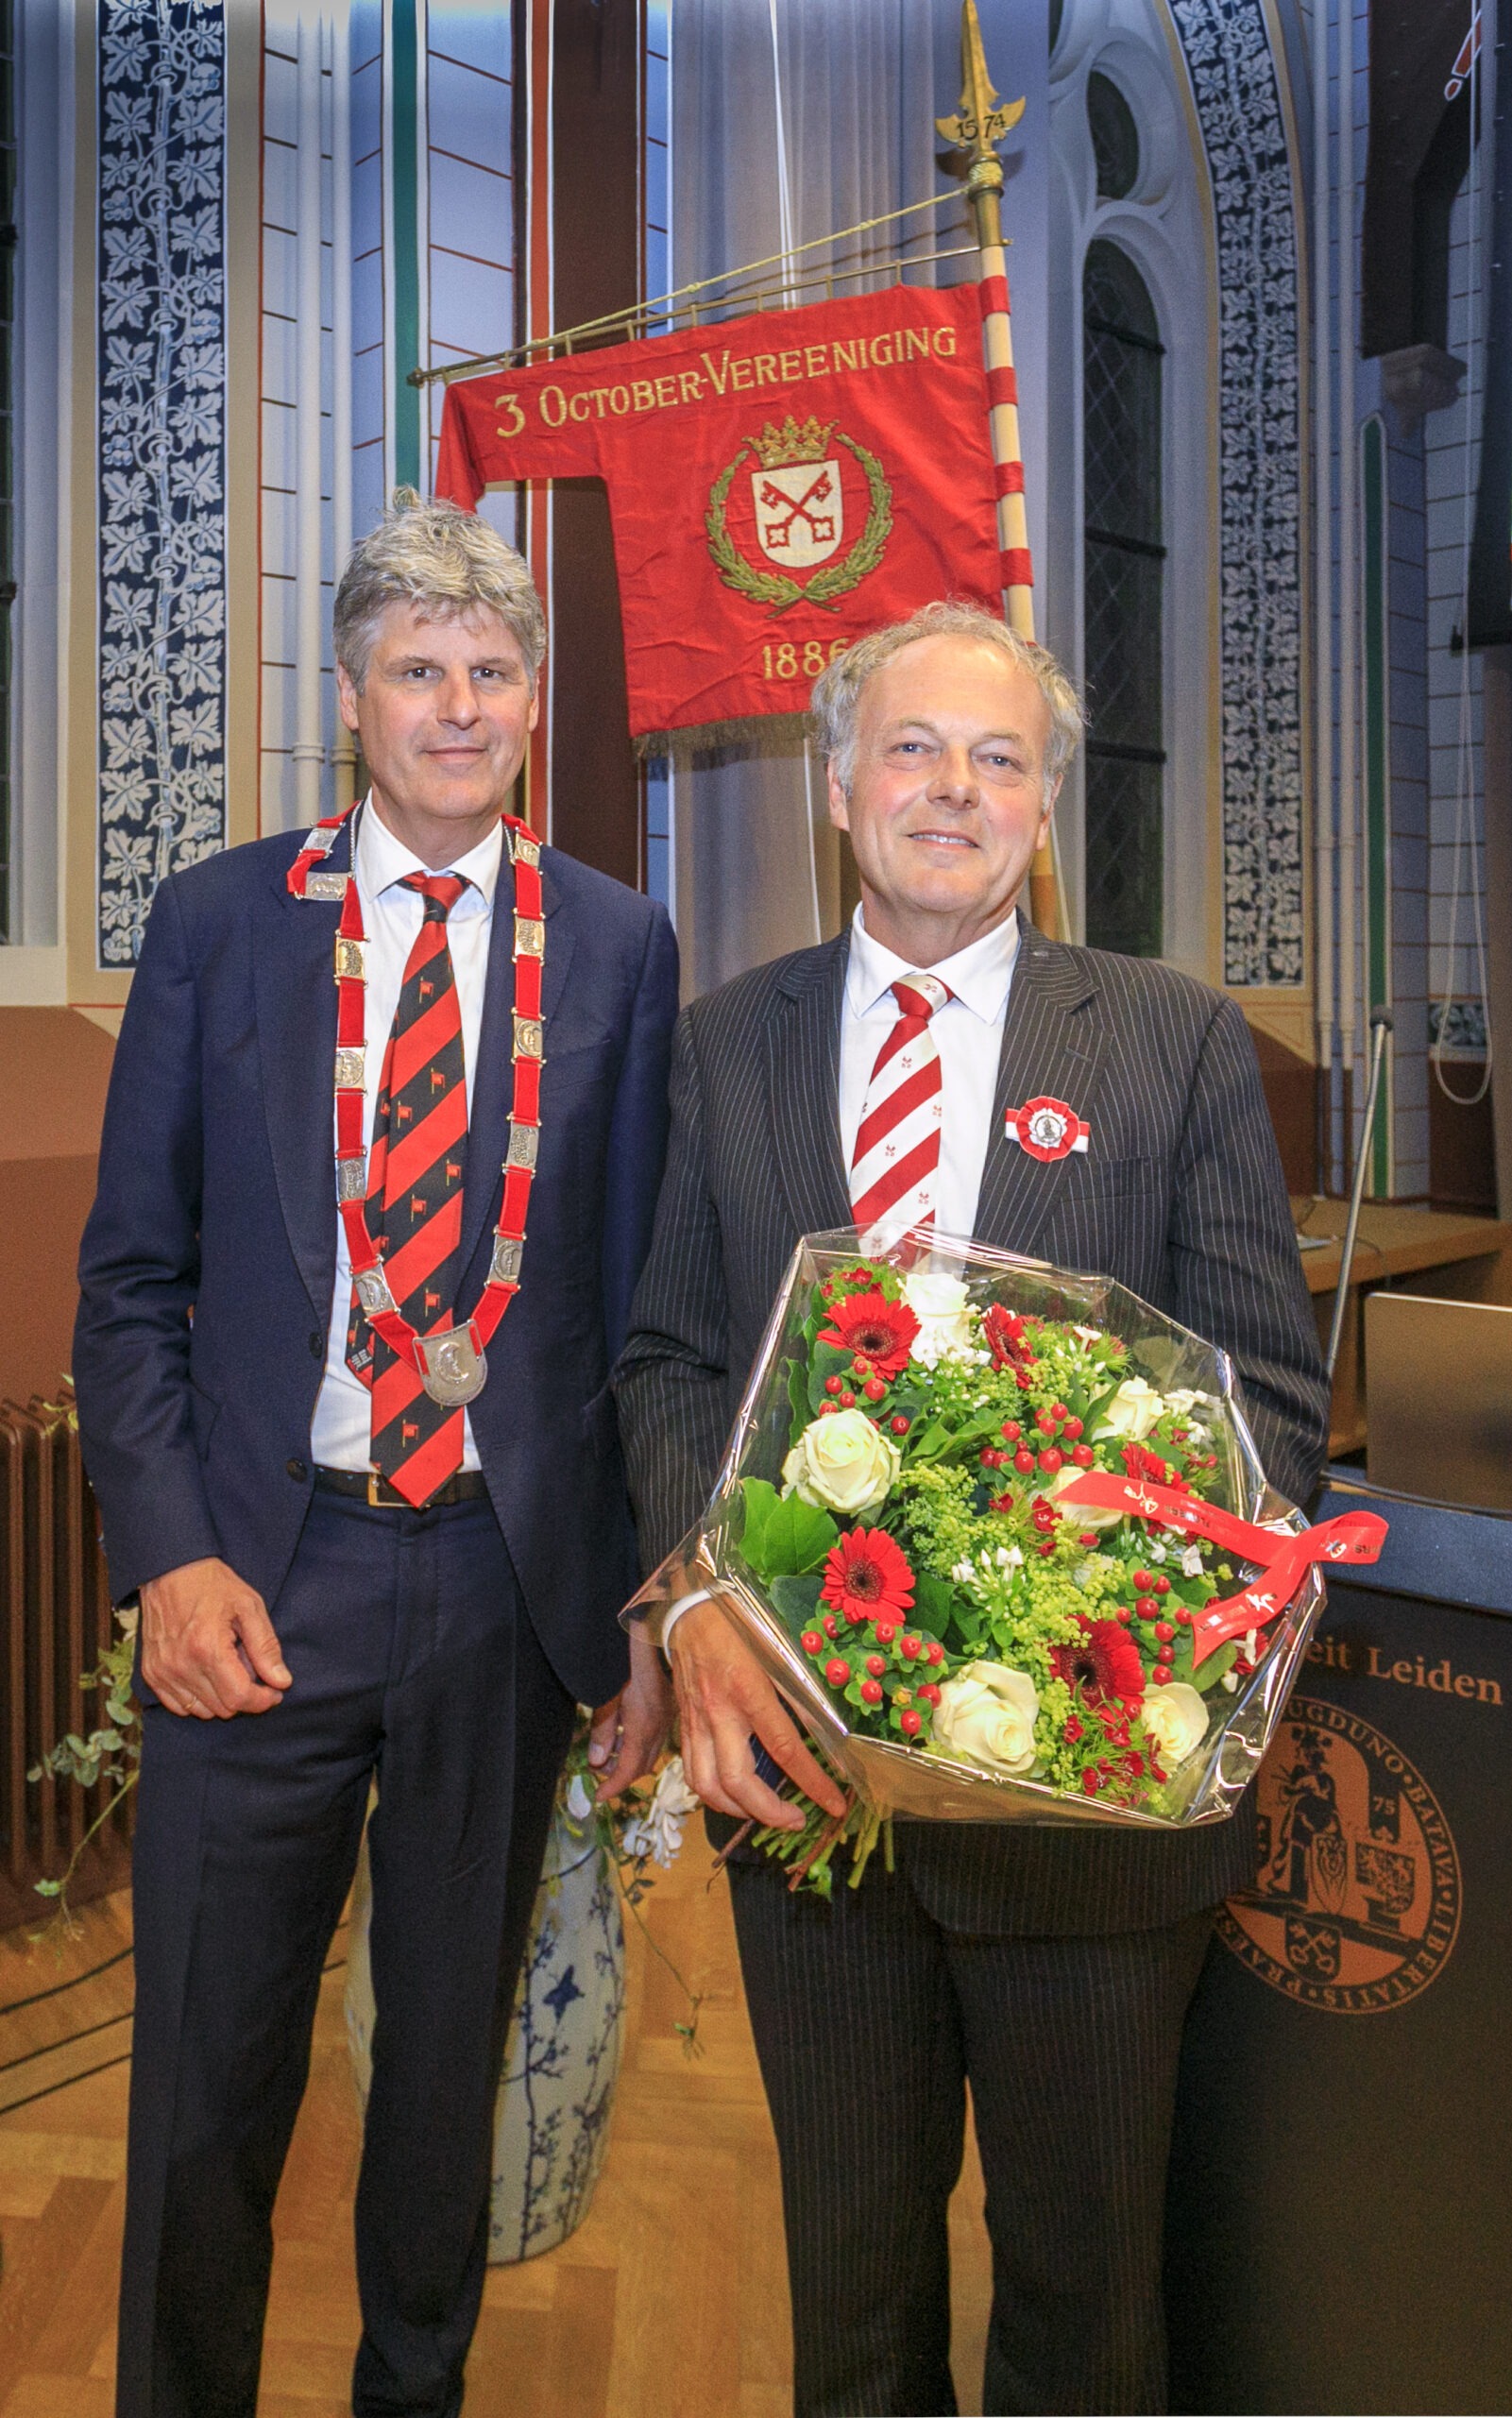 Oud-burgemeester Henri Lenferink benoemd tot erelid van de 3 October Vereeniging